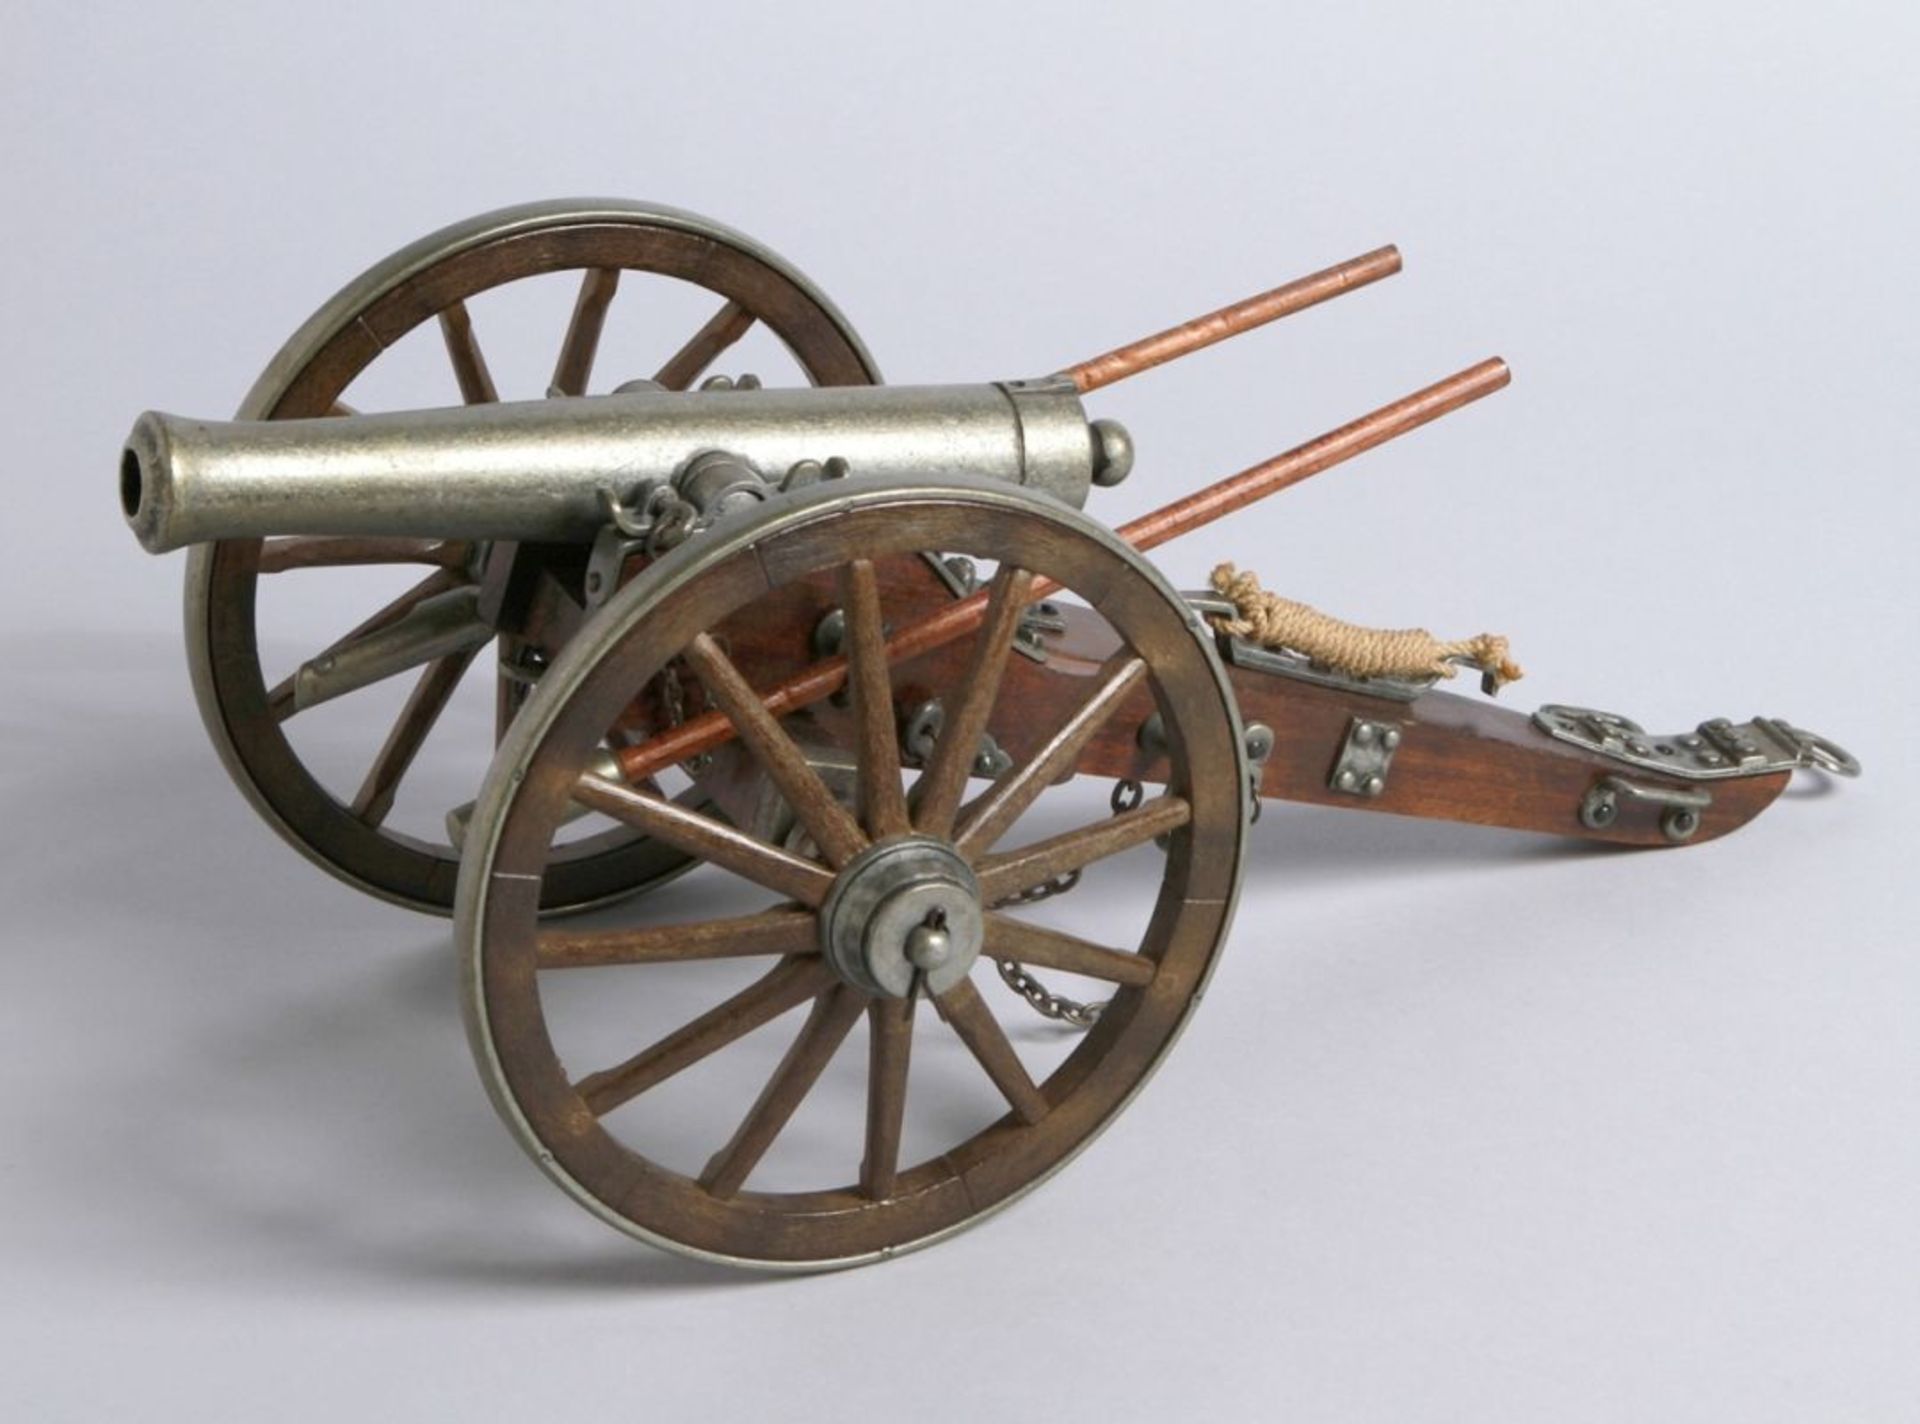 Modell-Kanone, neuzeitlich nach altem Vorbild gearbeitet, Holz, Metall und Kunstsstoff,mit